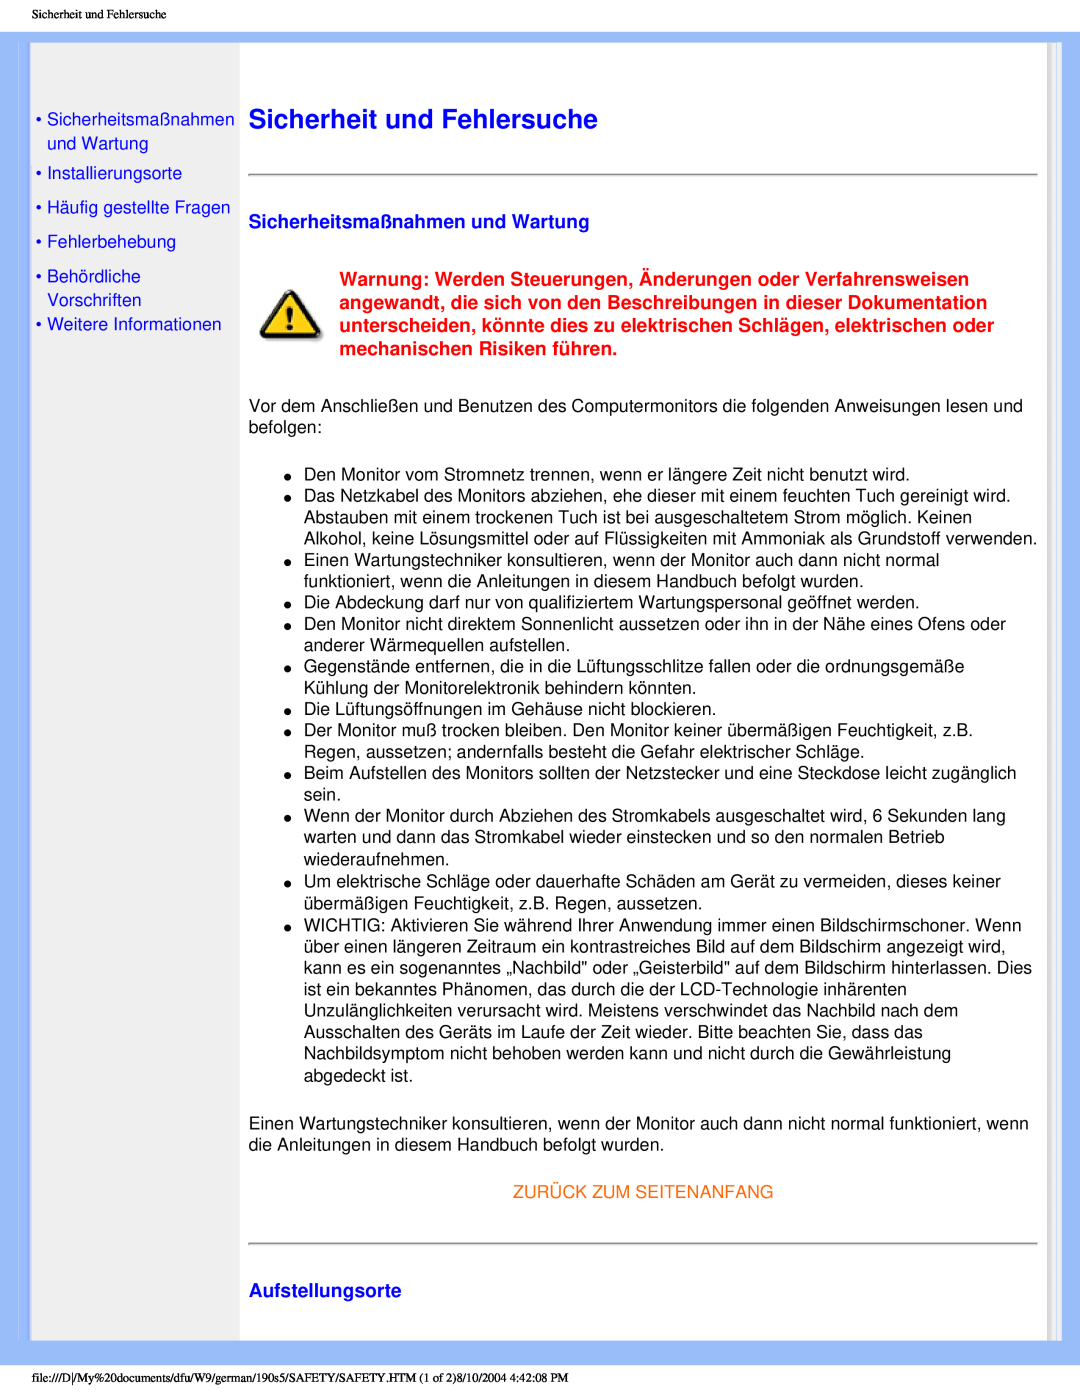 Philips 190S5 Sicherheit und Fehlersuche, Sicherheitsmaßnahmen und Wartung, Aufstellungsorte, •Weitere Informationen 